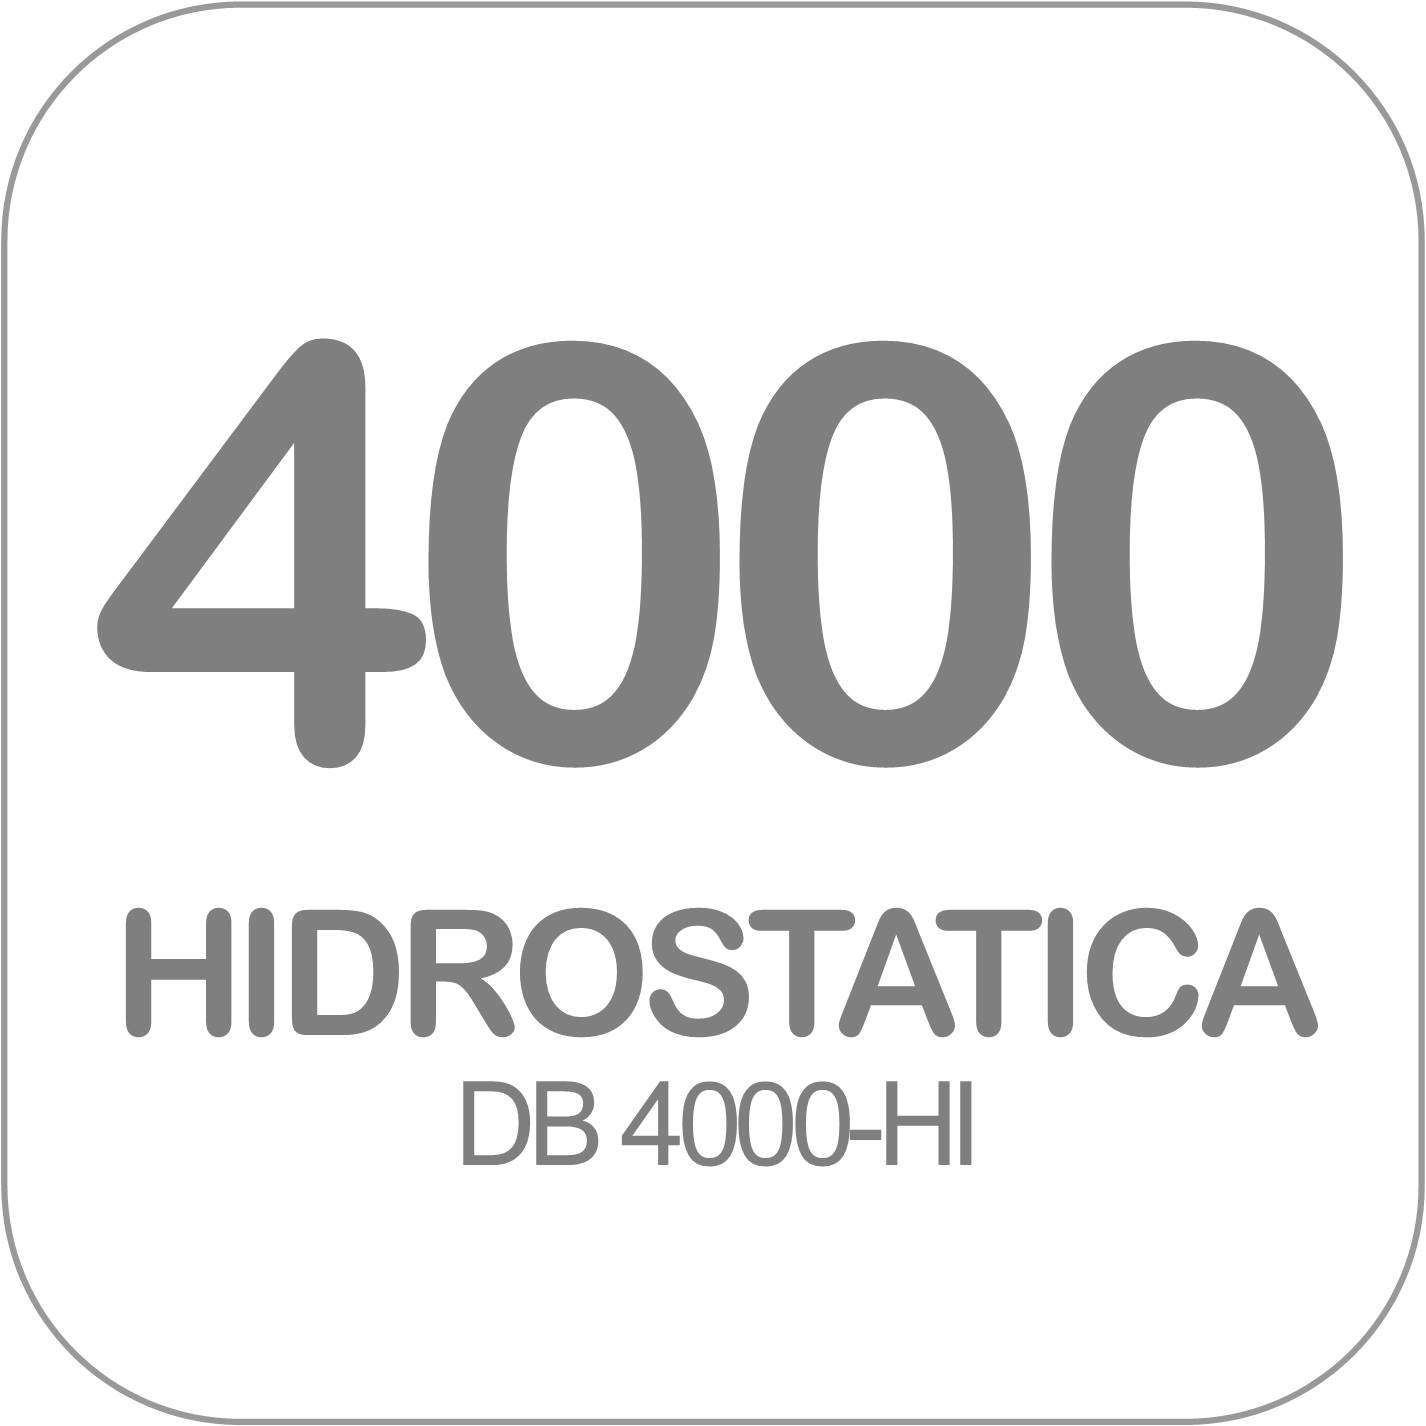 Autohormigonera DB 4000-HI